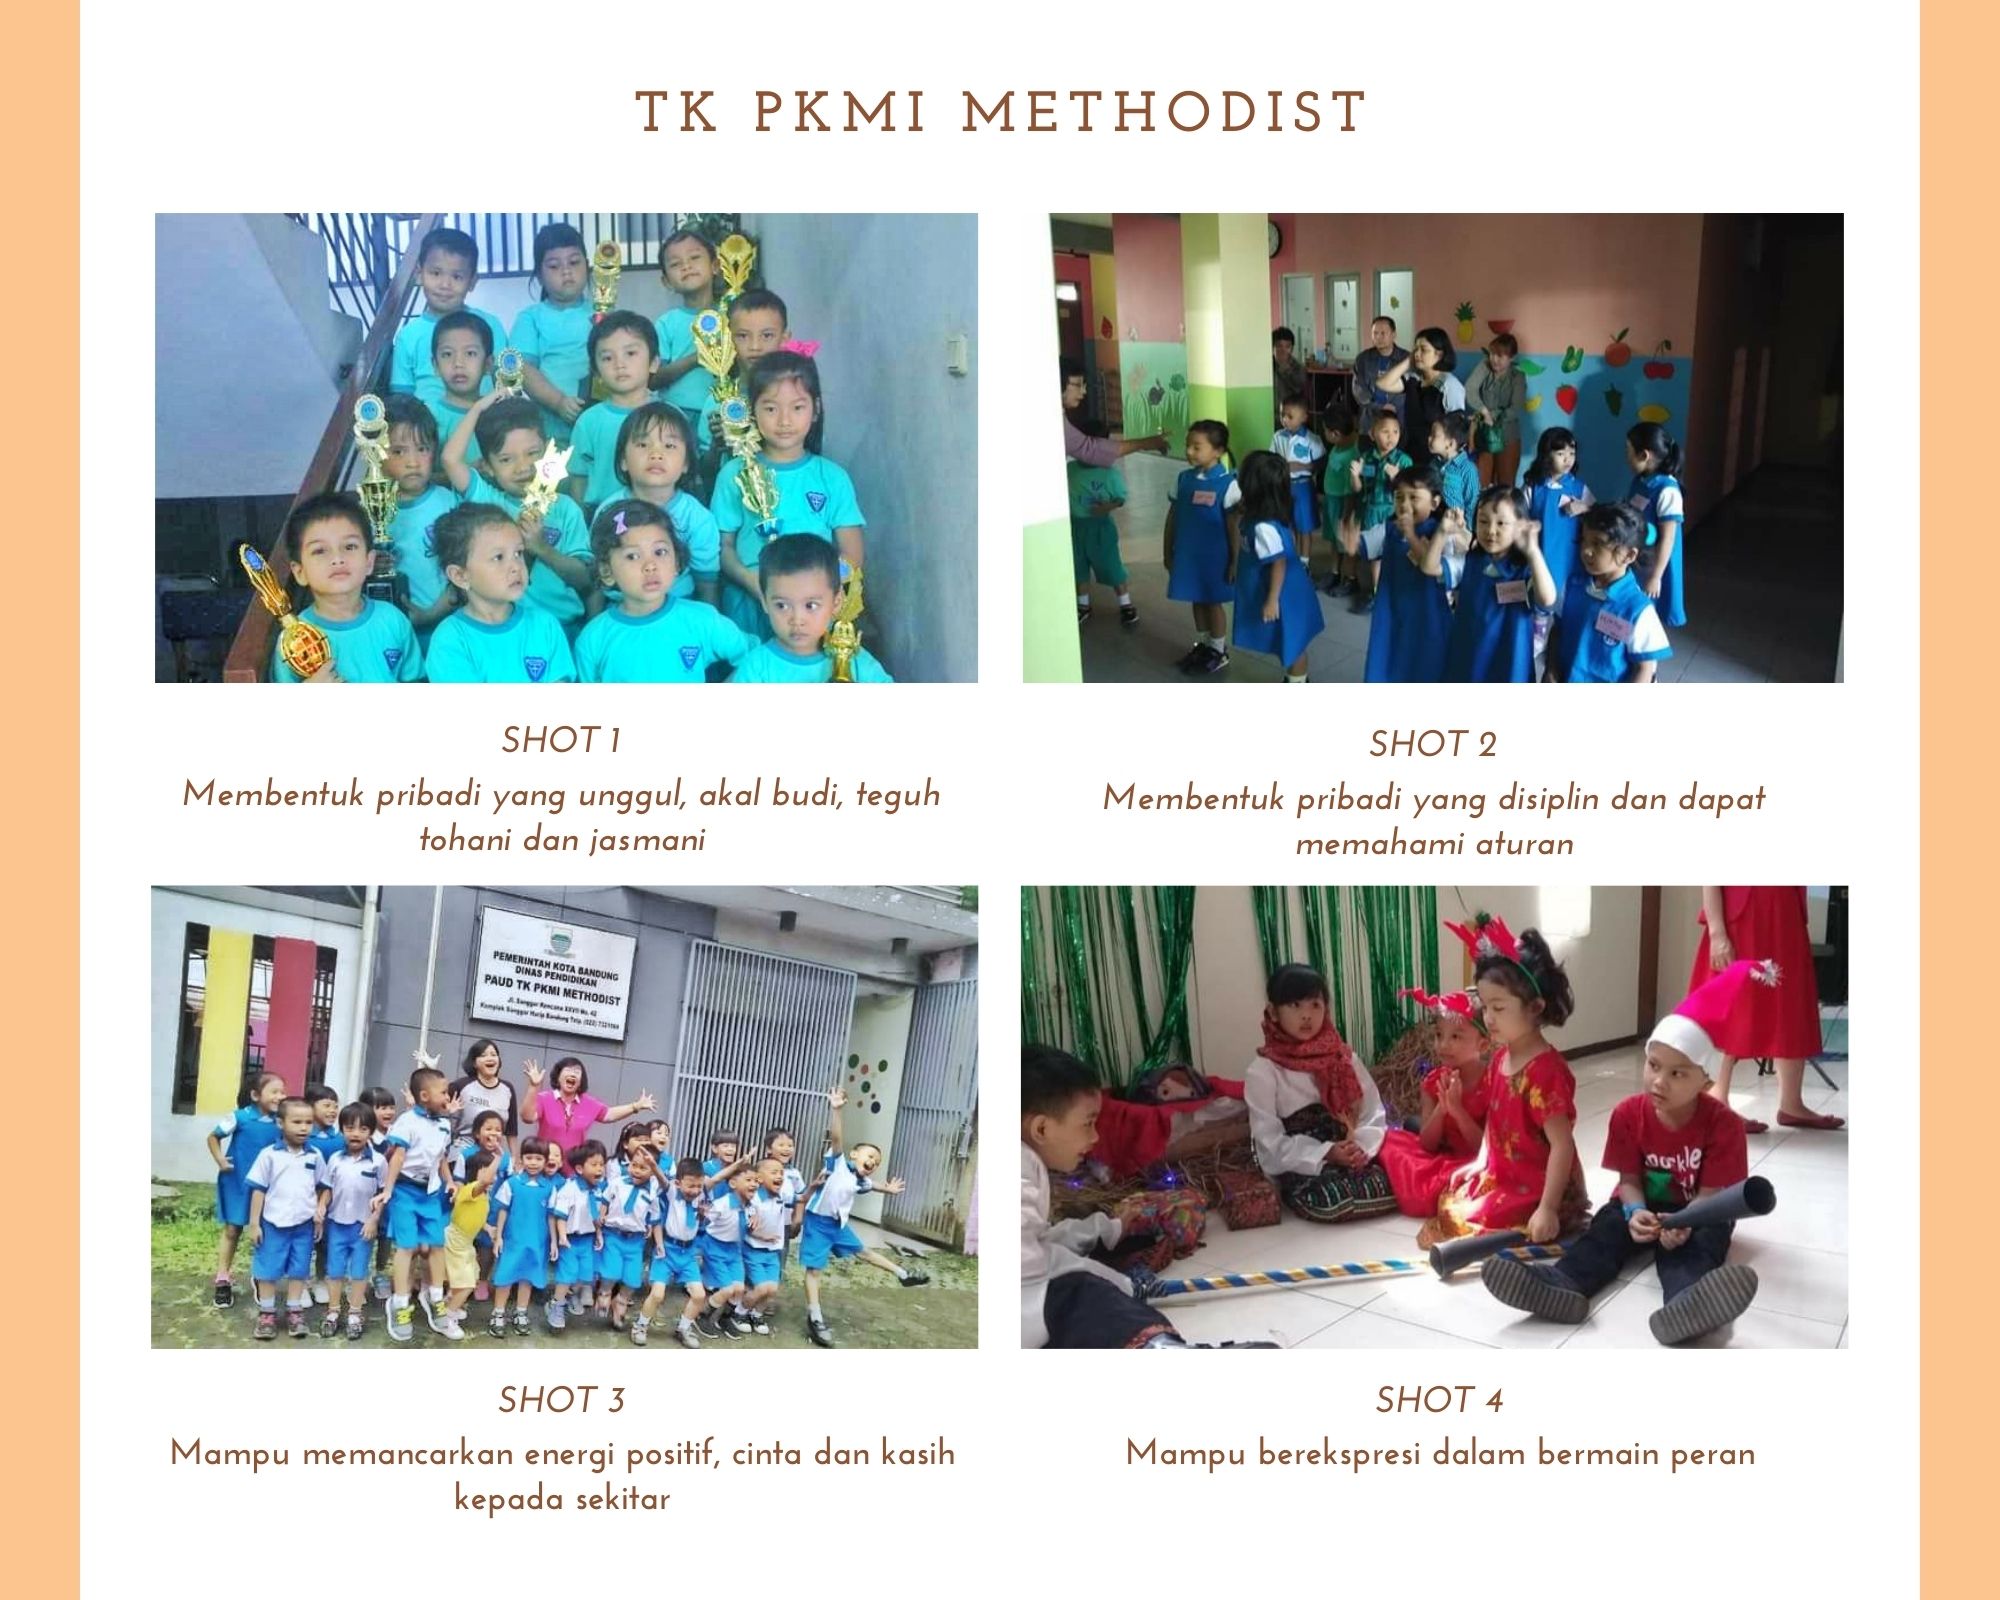 Perayaan natal 2019 TK PKMI Methodist Bandung Timur